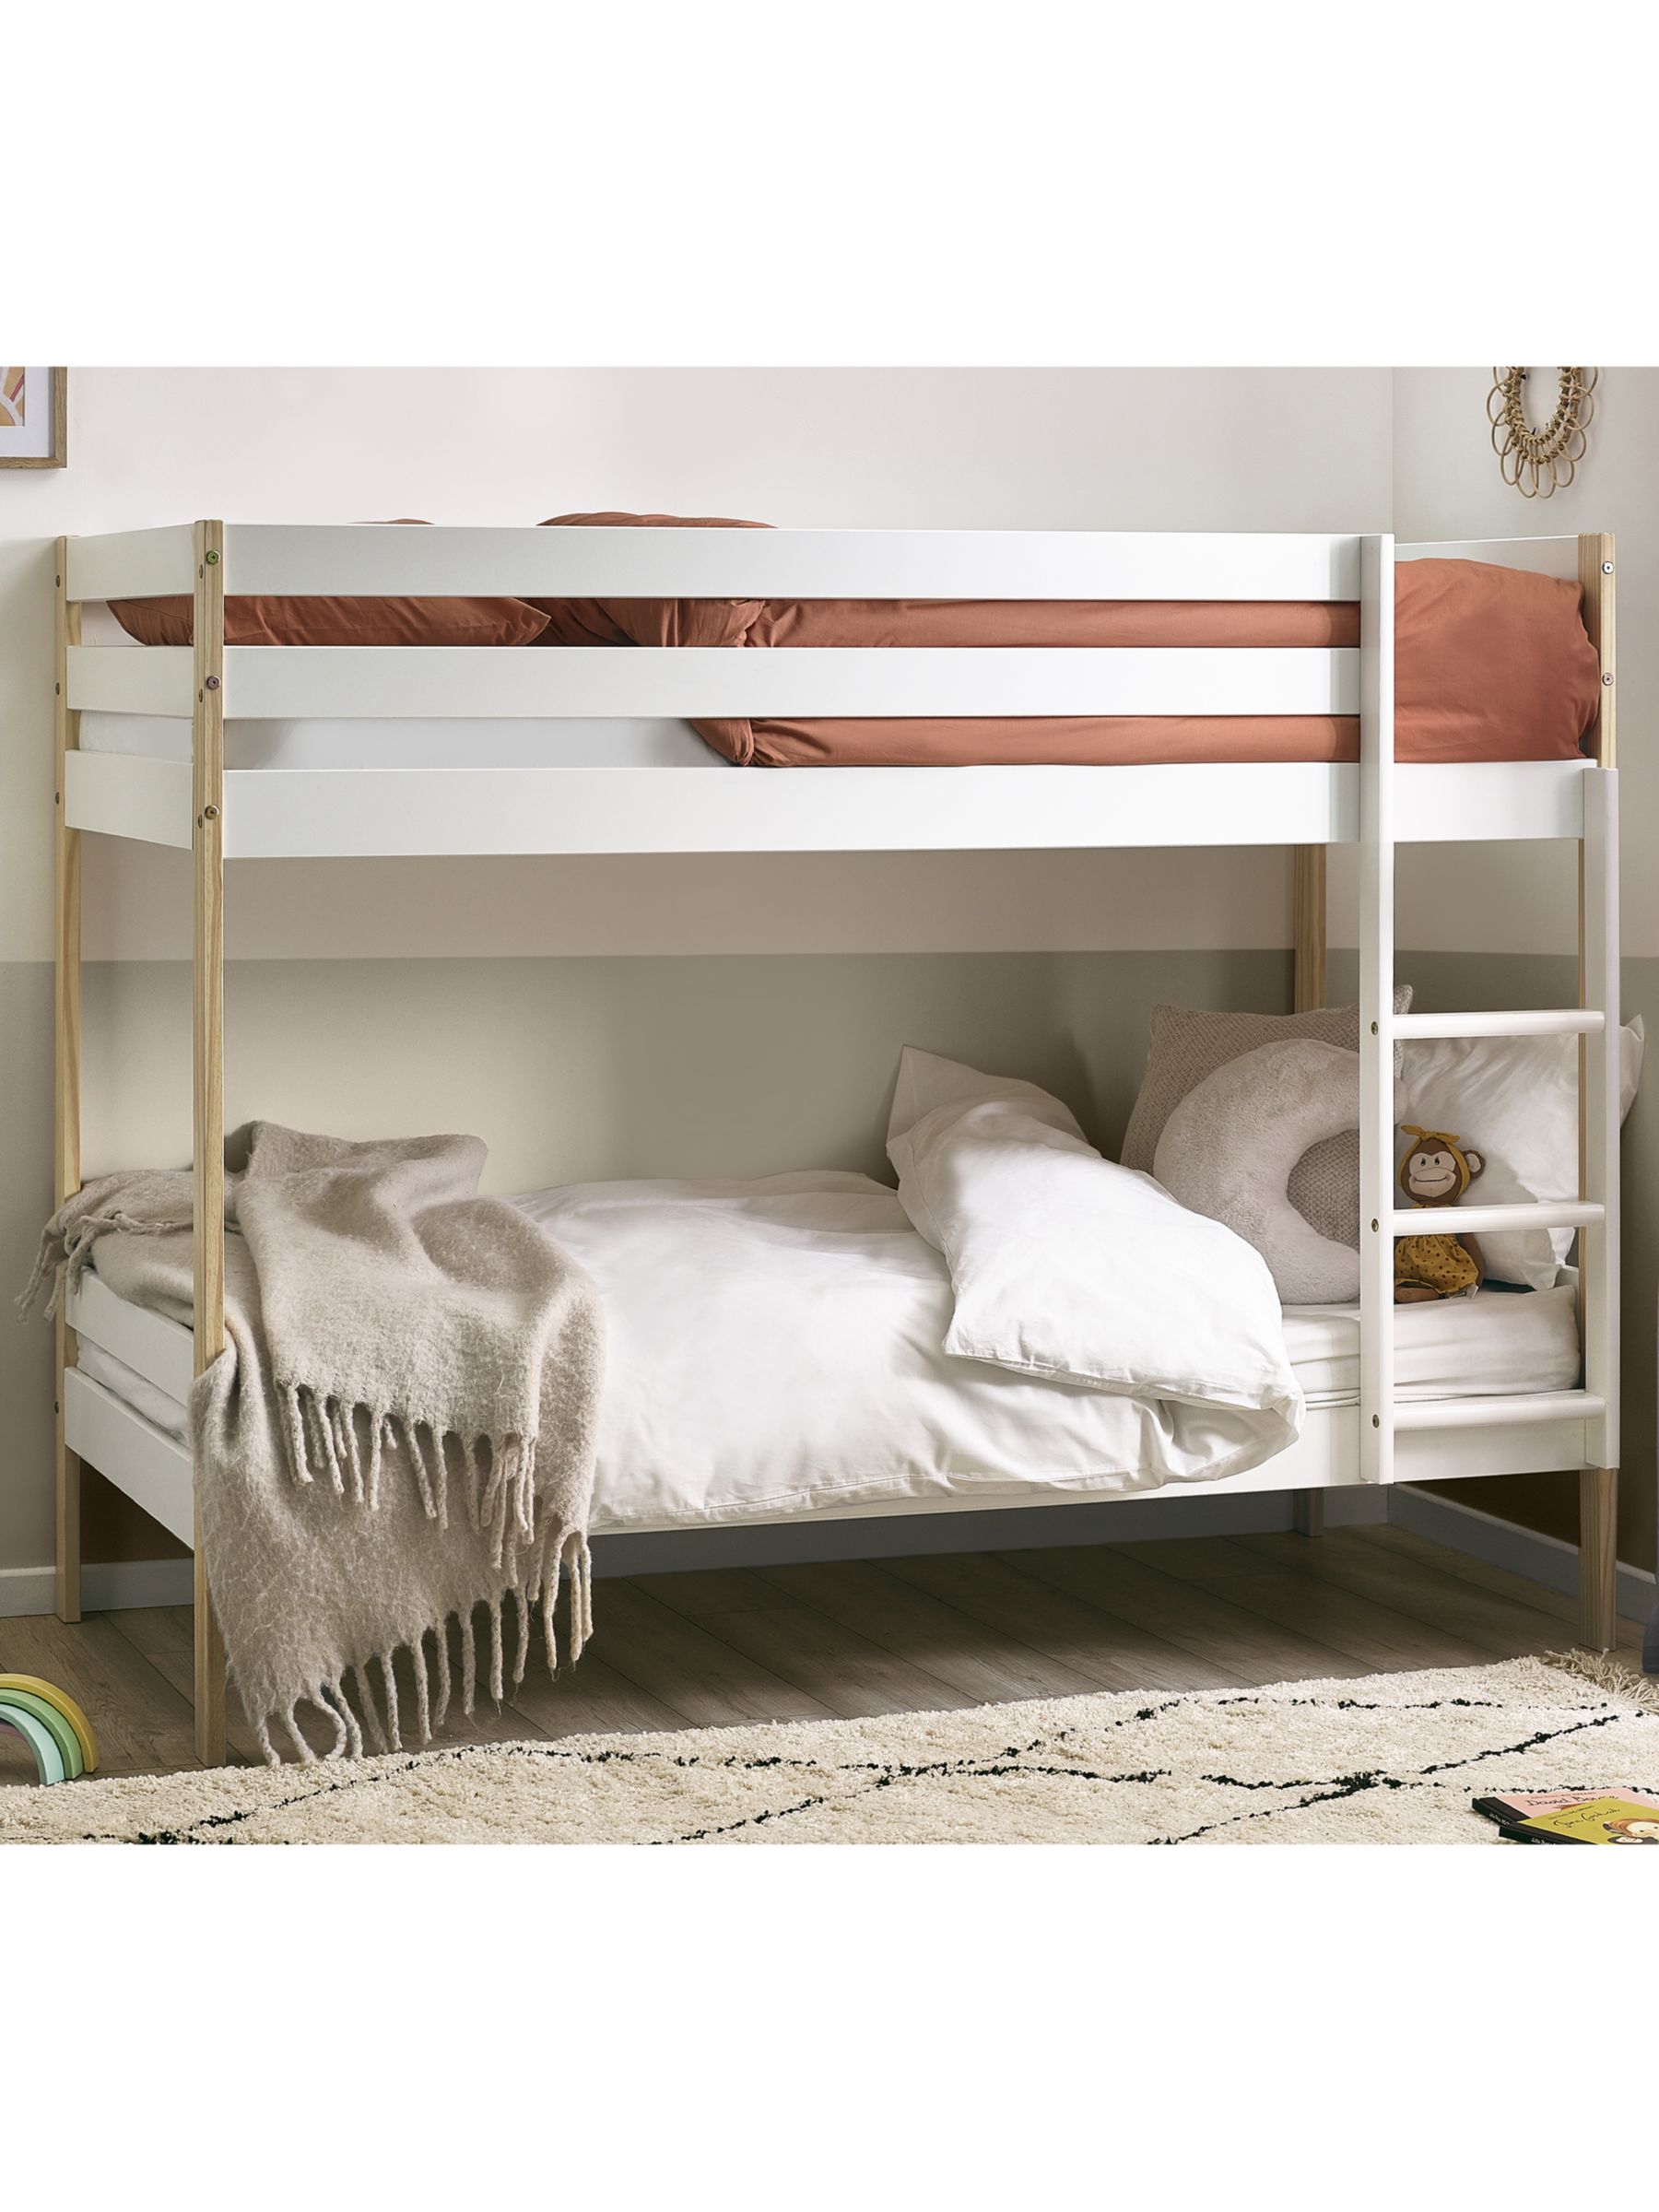 Photo of Julian bowen nova bunk bed single white/pine